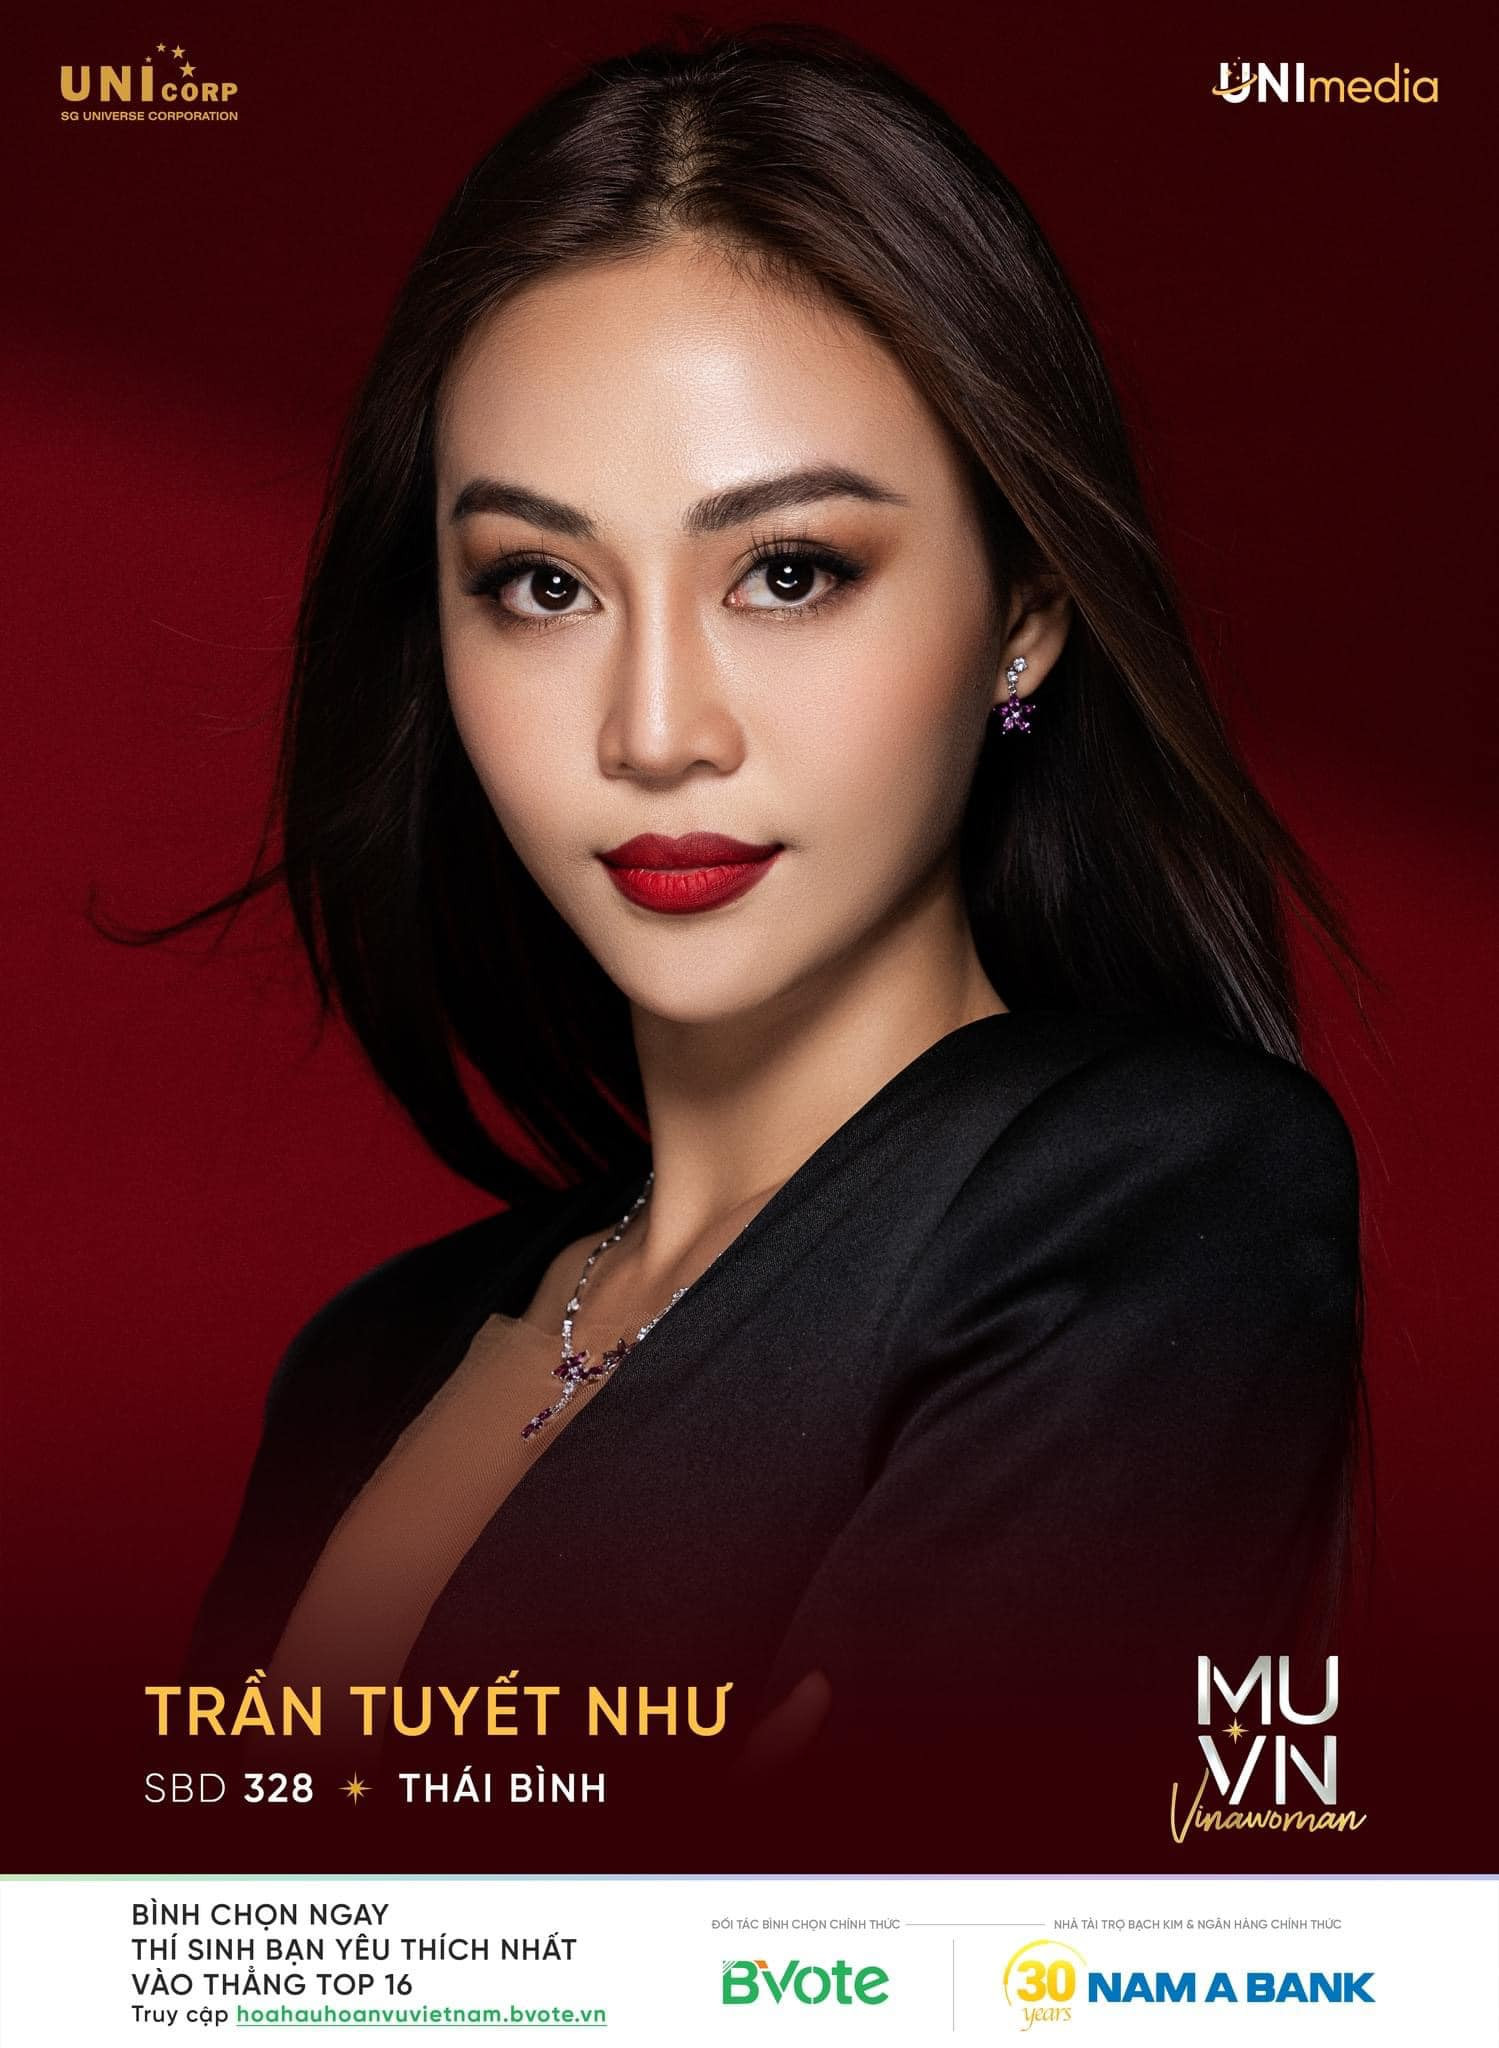 Nguyễn Thị Ngọc Châu - SBD 314 vence miss universe vietnam 2022. - Página 3 VWJvhx